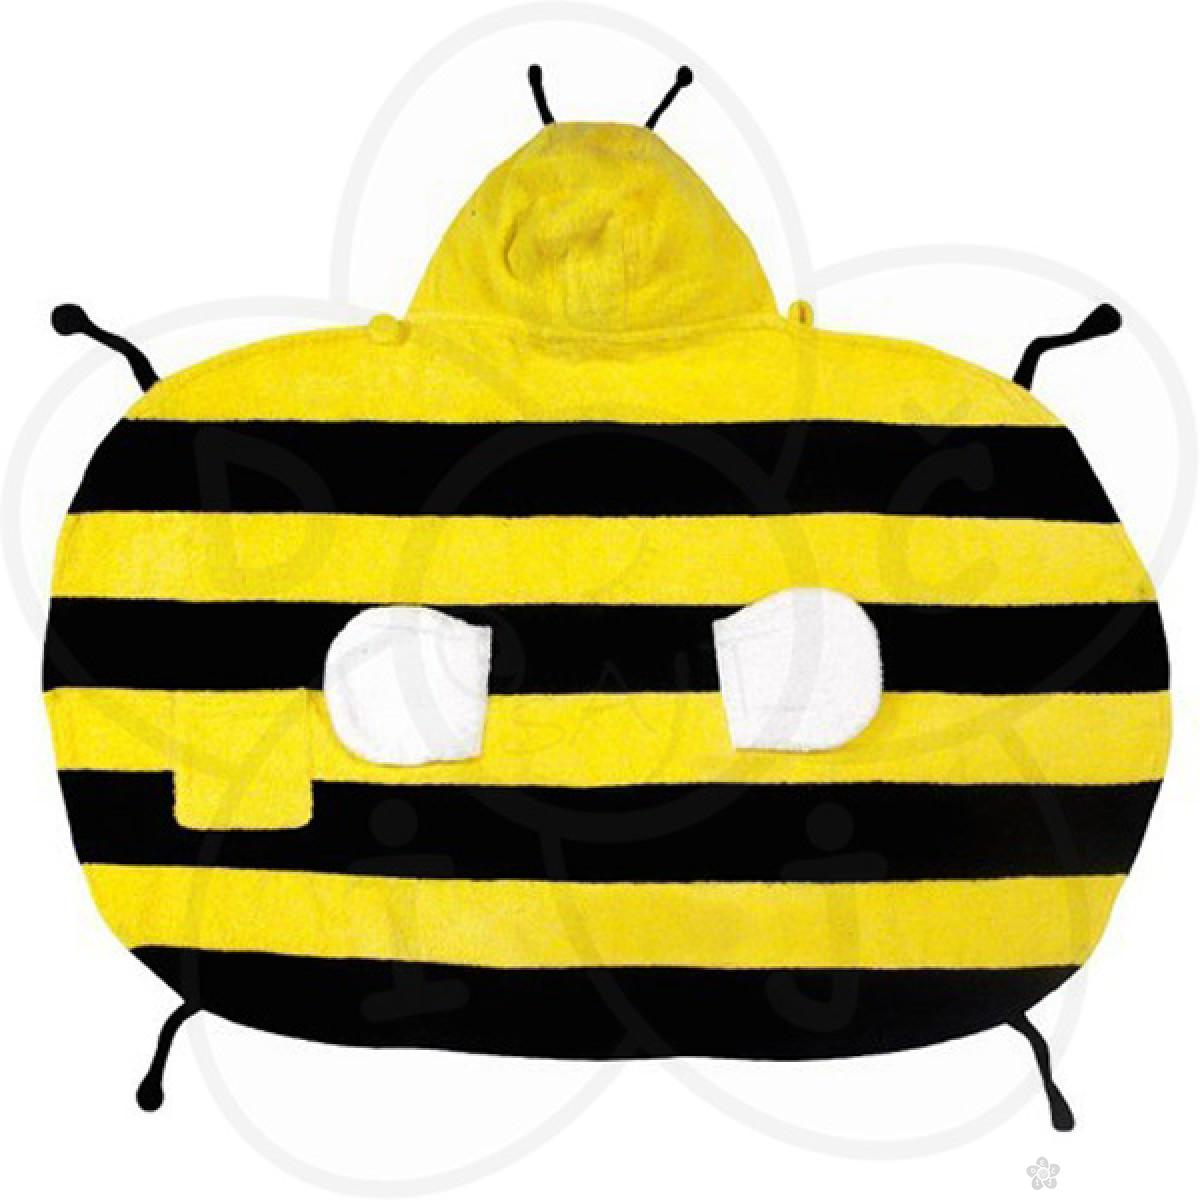 Ogrtač - peškir pčela, mali 